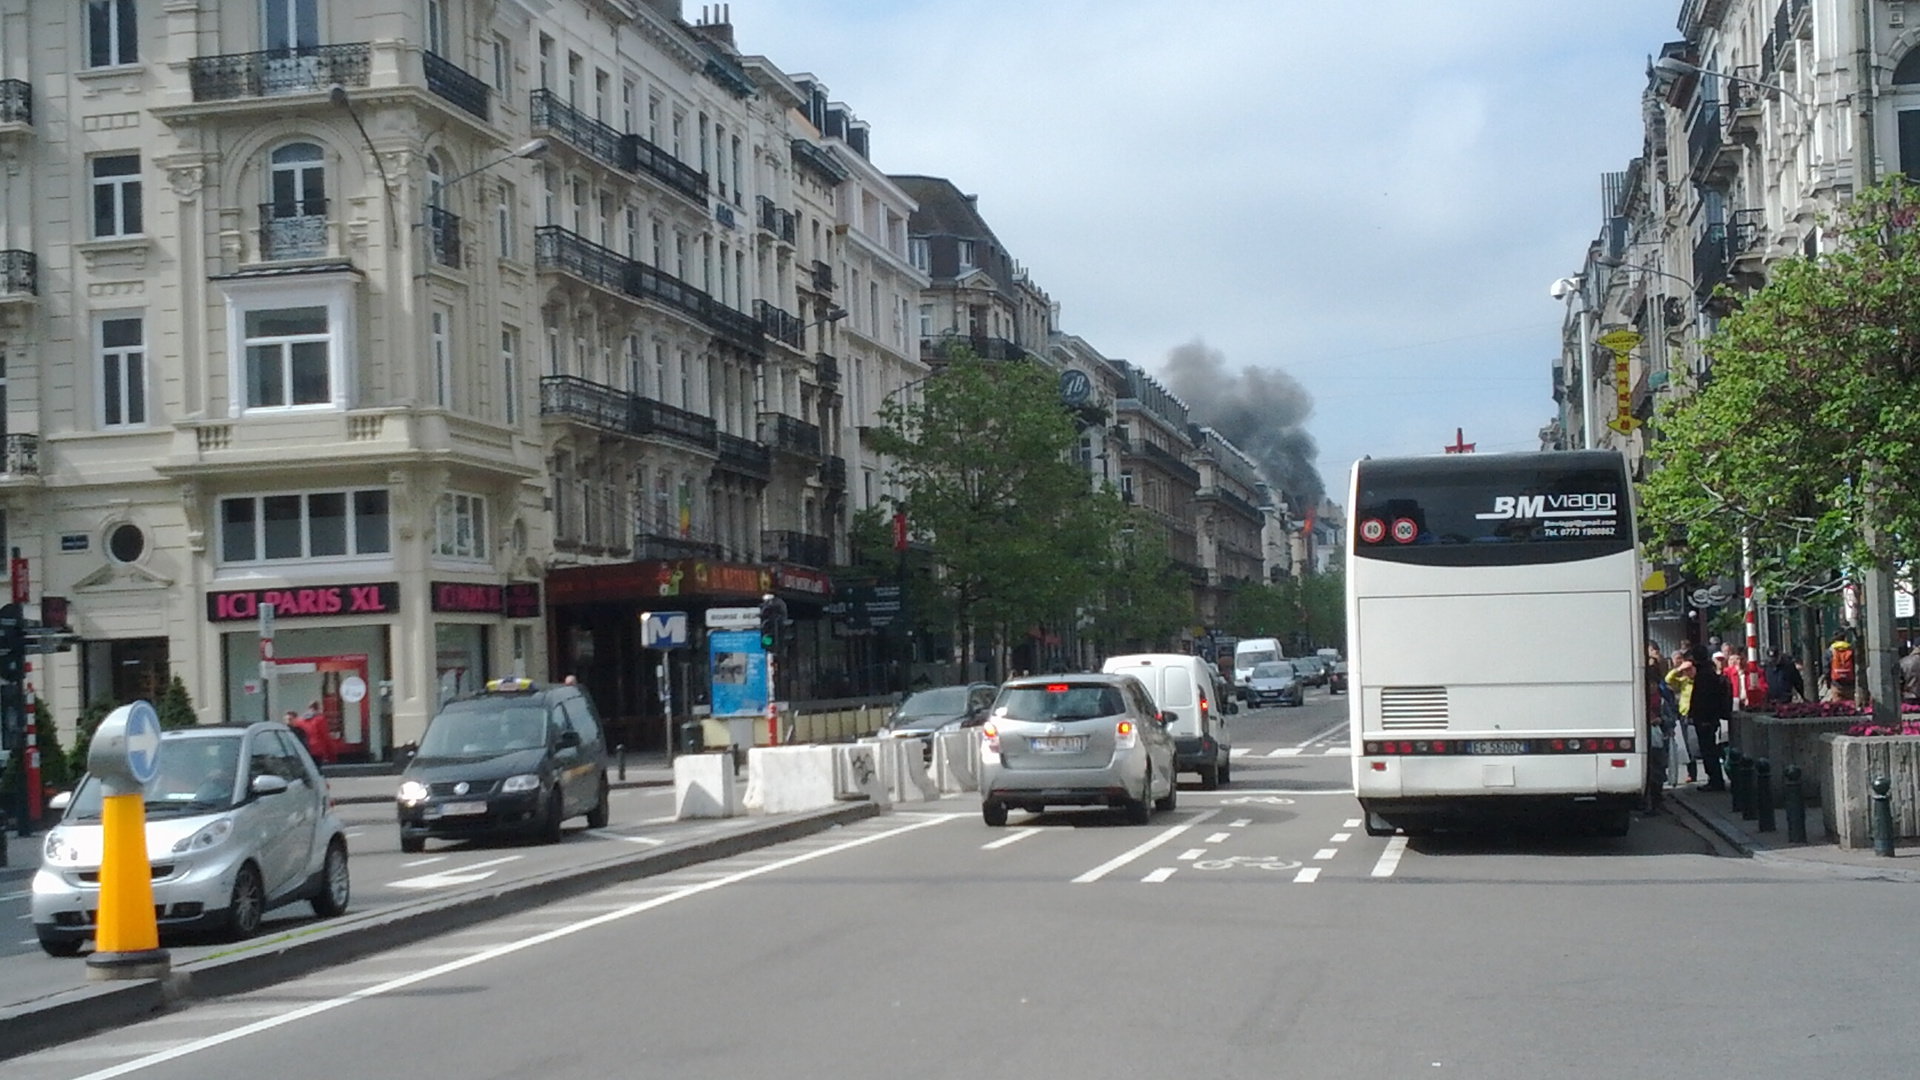 Brüssel - Brand eines Wohngebäudes in der Innenstadt